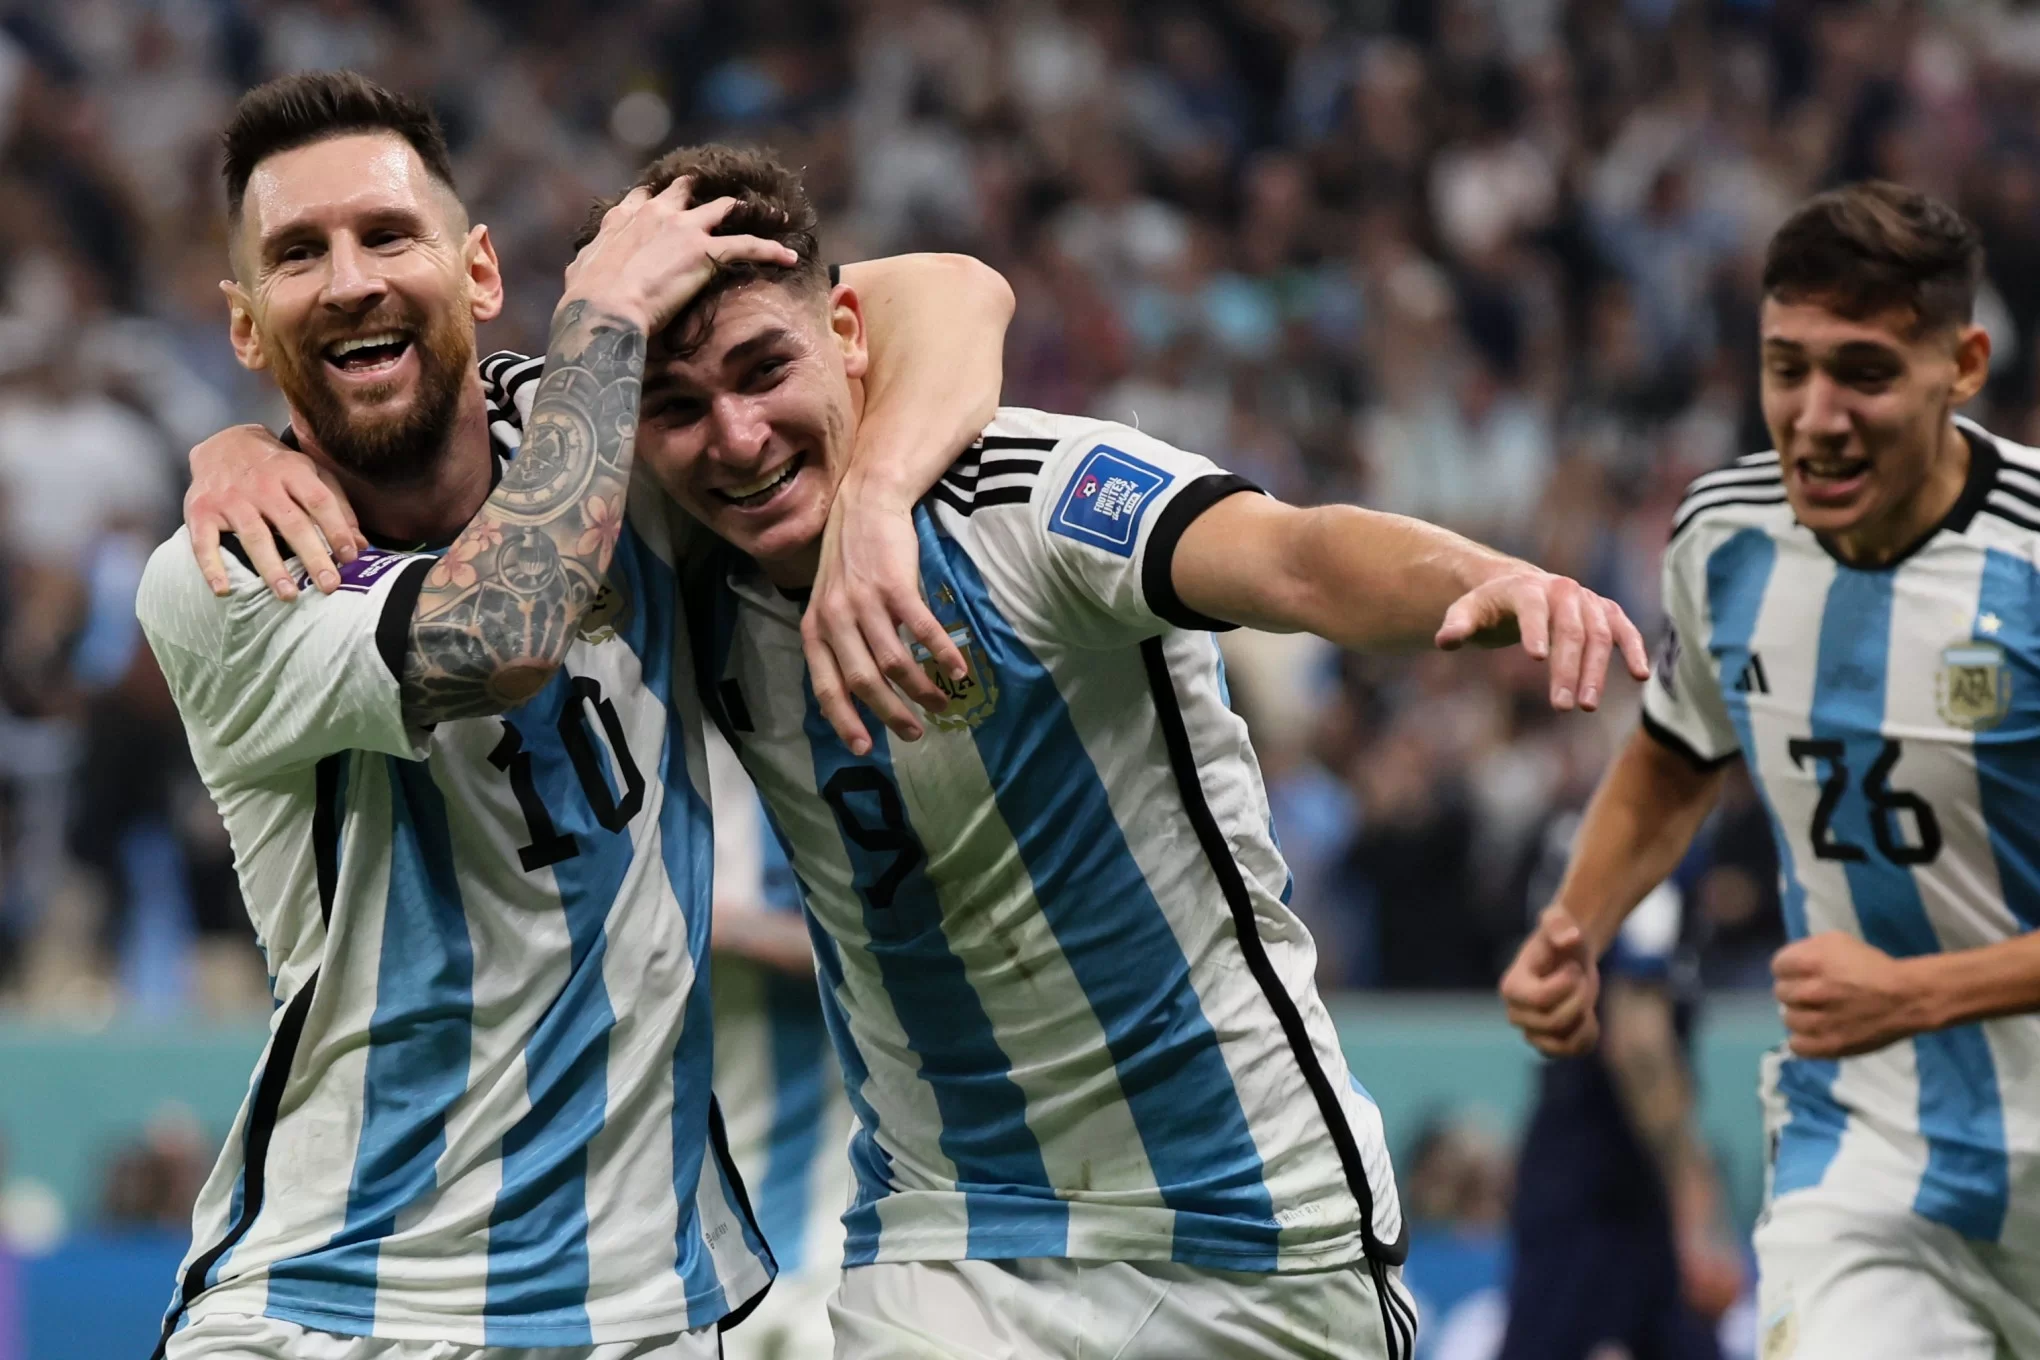 Argentina vai à loucura com a final na Copa do Mundo